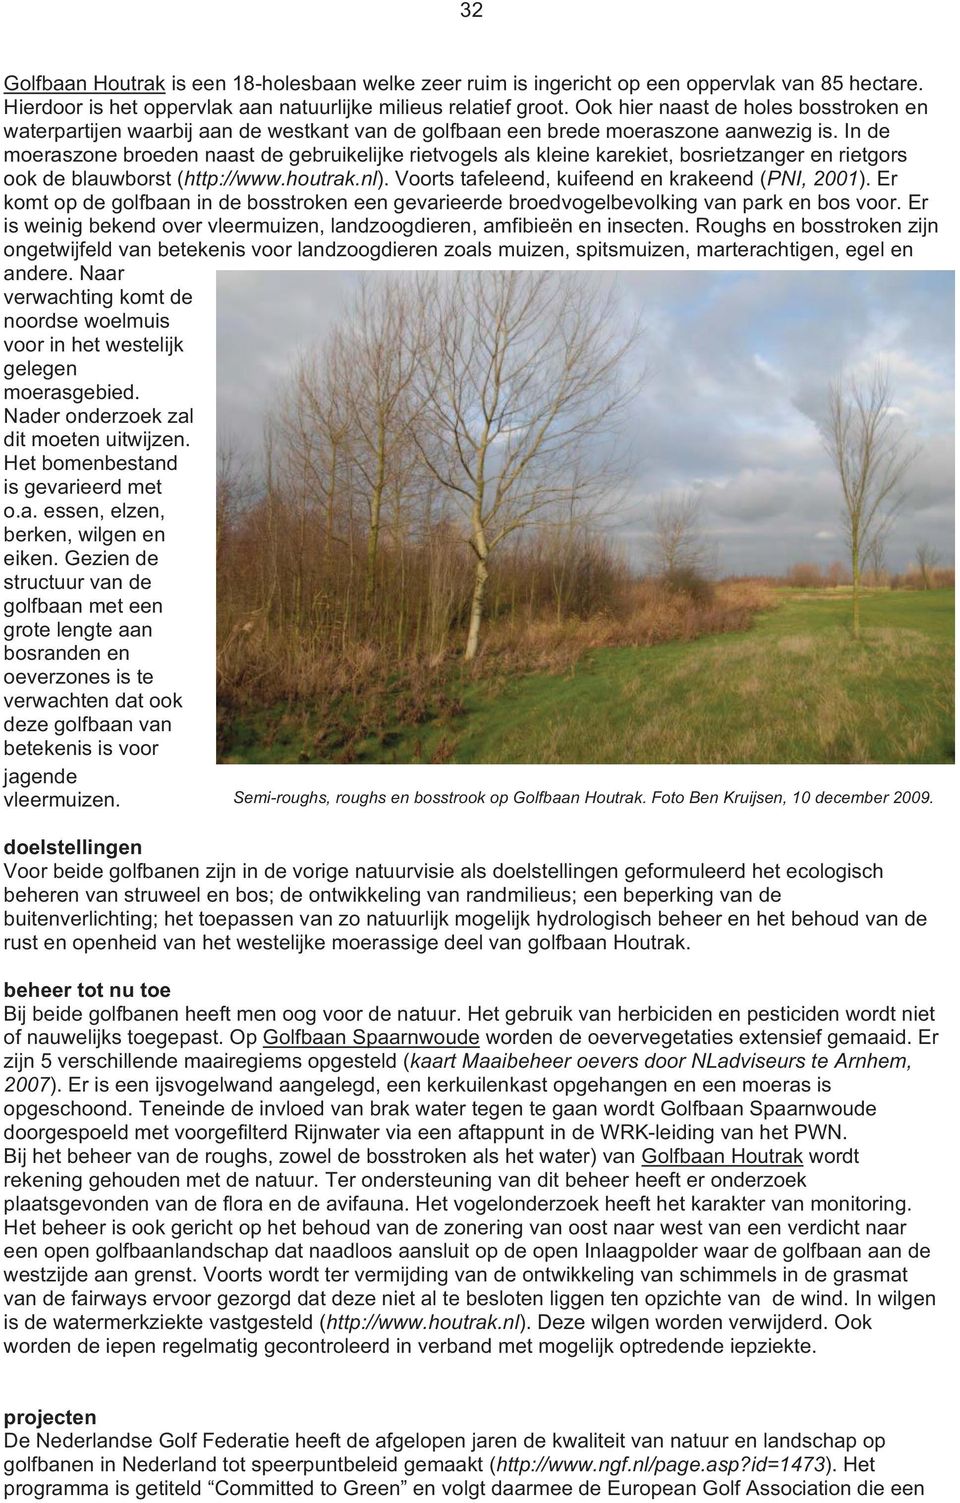 In de moeraszone broeden naast de gebruikelijke rietvogels als kleine karekiet, bosrietzanger en rietgors ook de blauwborst (http://www.houtrak.nl). Voorts tafeleend, kuifeend en krakeend (PNI, 2001).